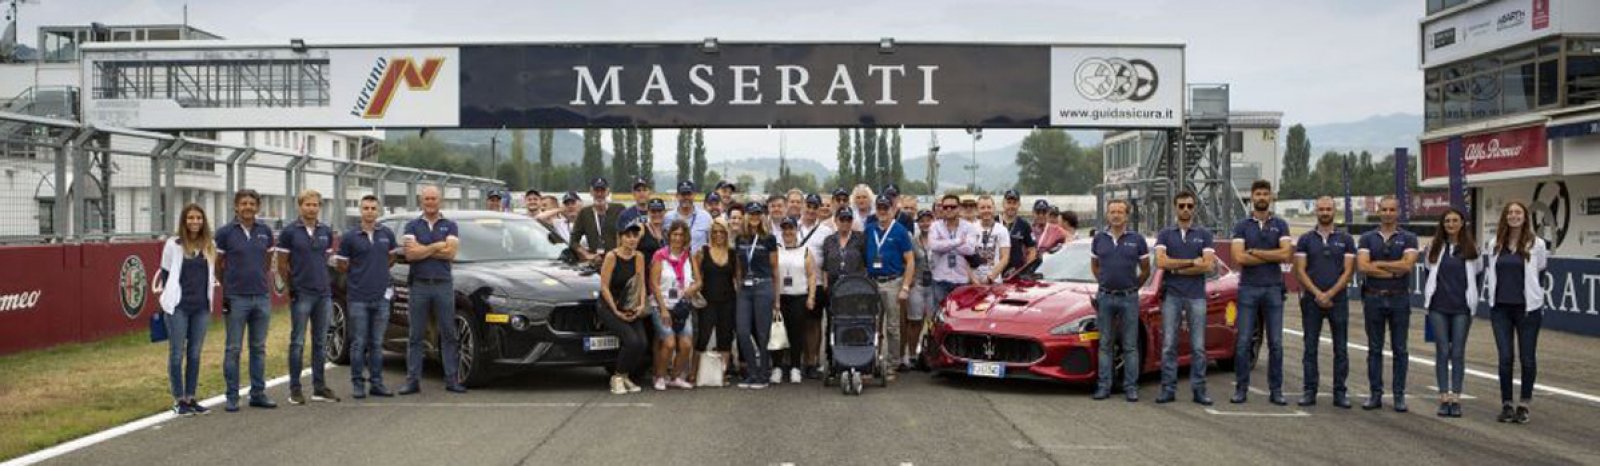 Rückblick Master Maserati Fahrtraining 2019